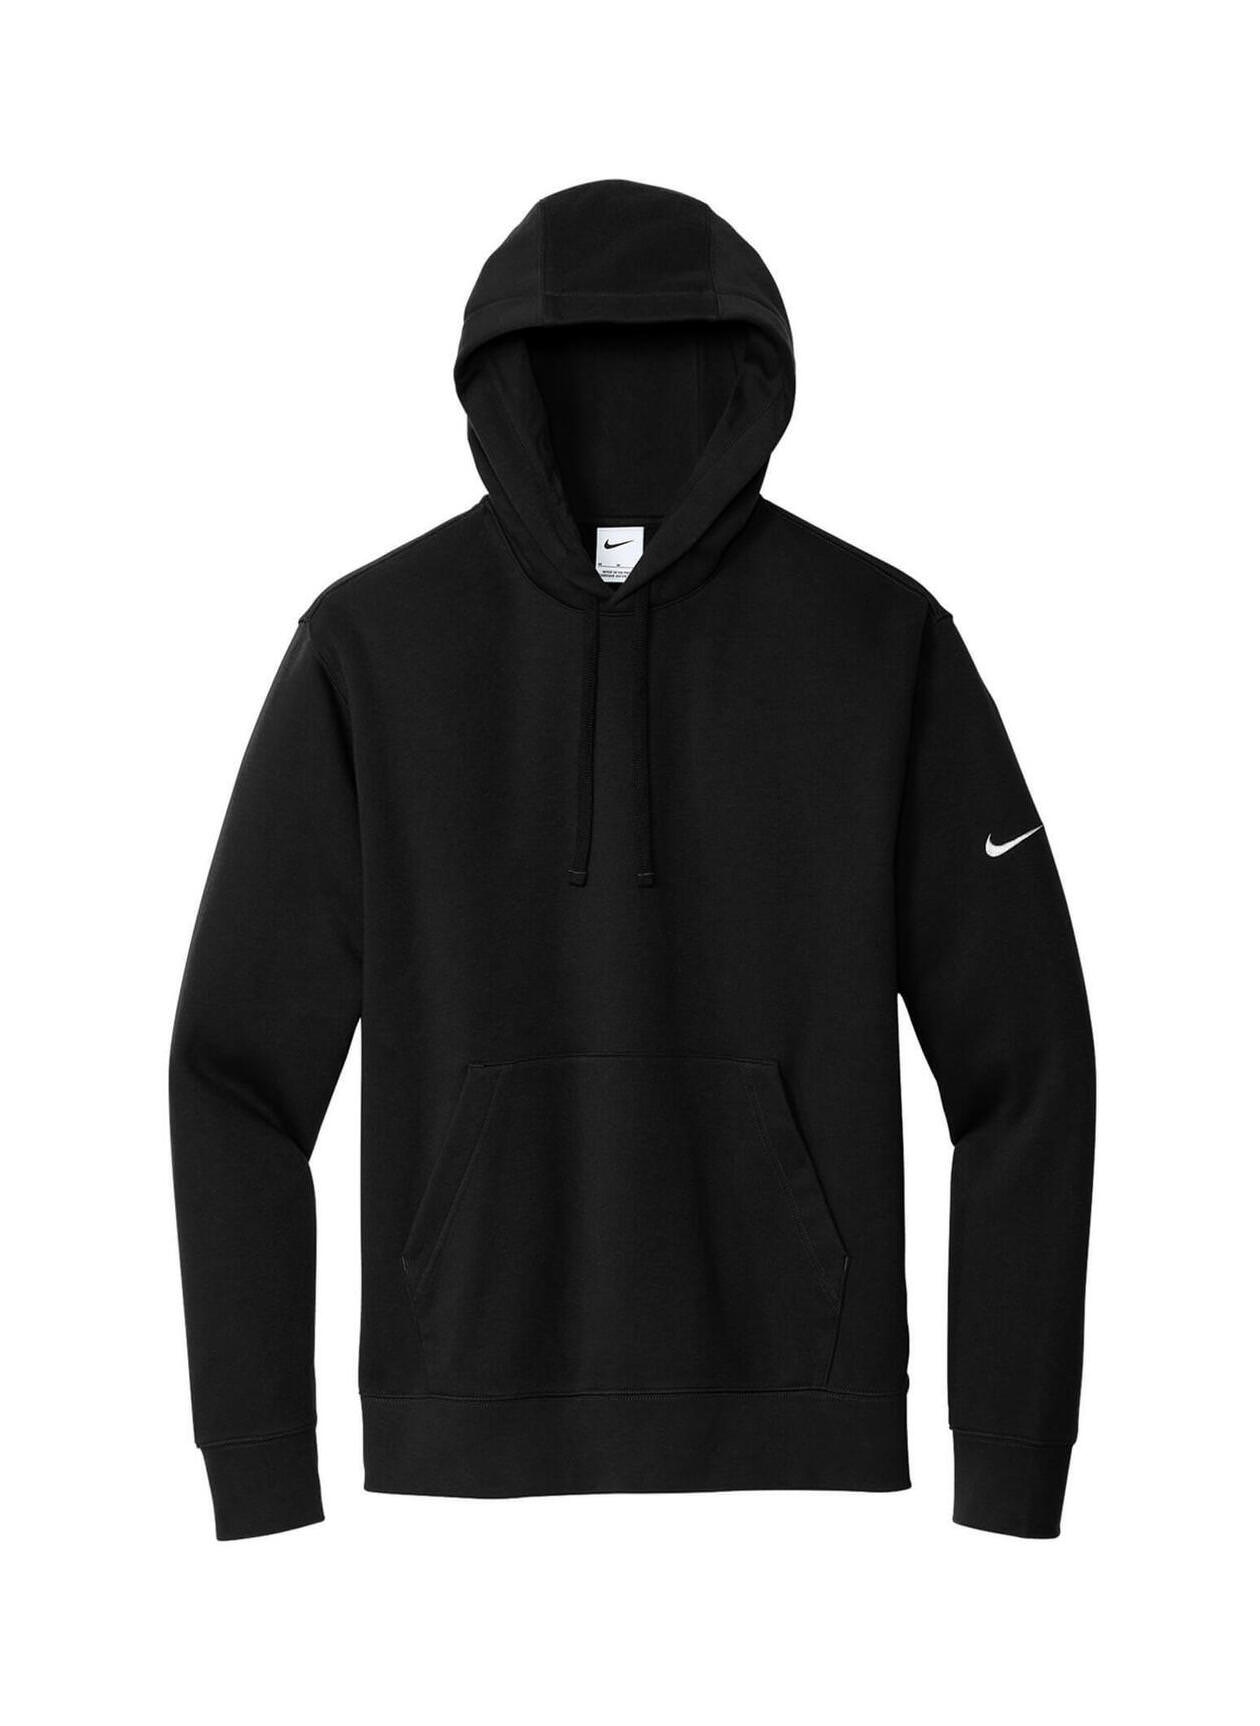 Custom Hoodies | Printed Nike Men's Black Club Fleece Sleeve Swoosh ...